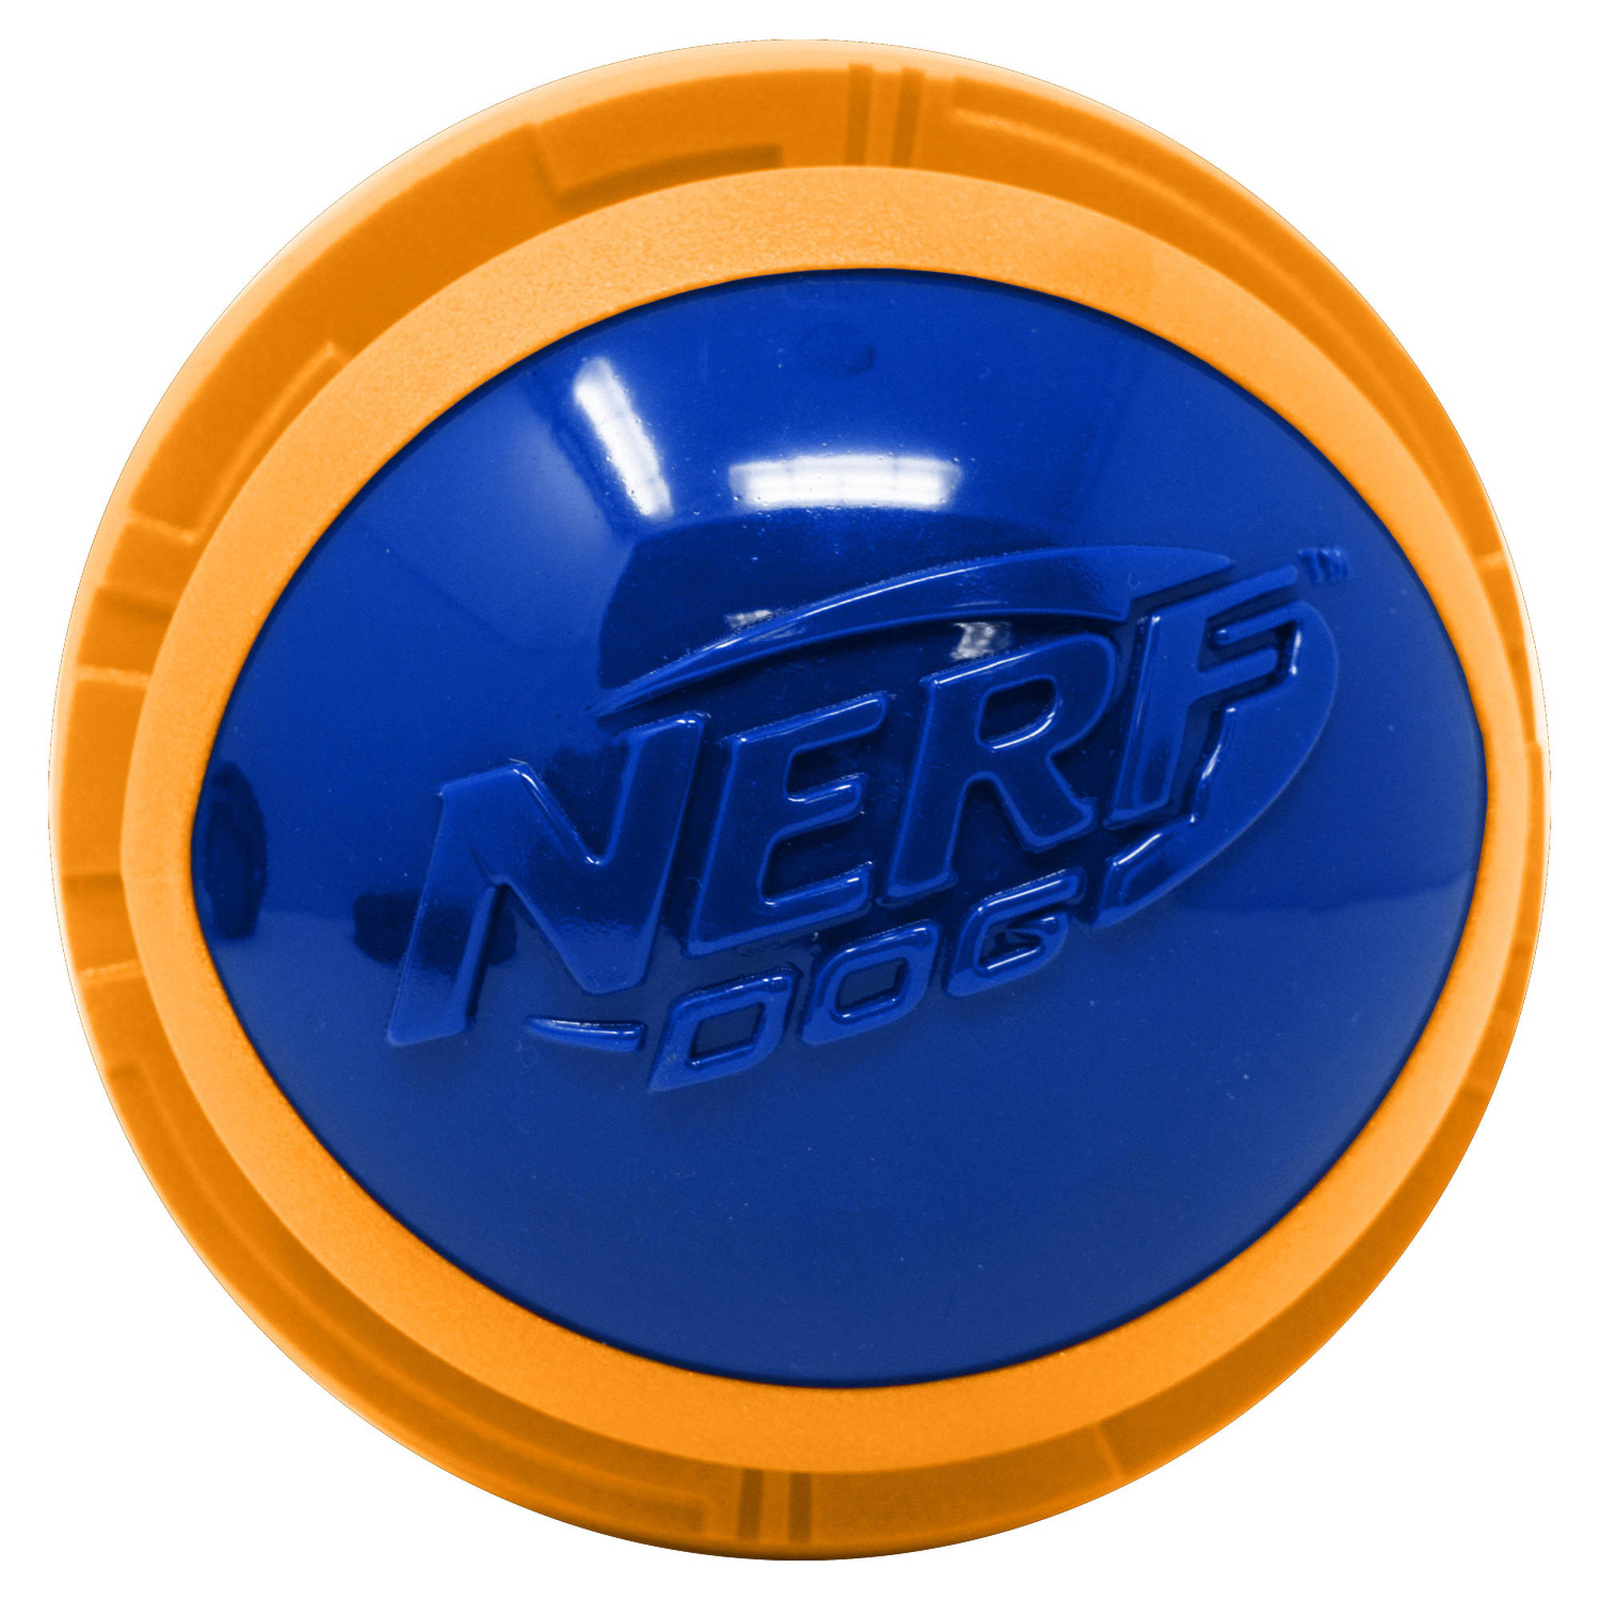 Nerf Nerf мяч из вспененной резины и термопластичной резины, 10 см (серия Мегатон), (синий/оранжевый) (380 г) nerf nerf мяч из вспененной резины и термопластичной резины 10 см серия мегатон синий оранжевый 380 г